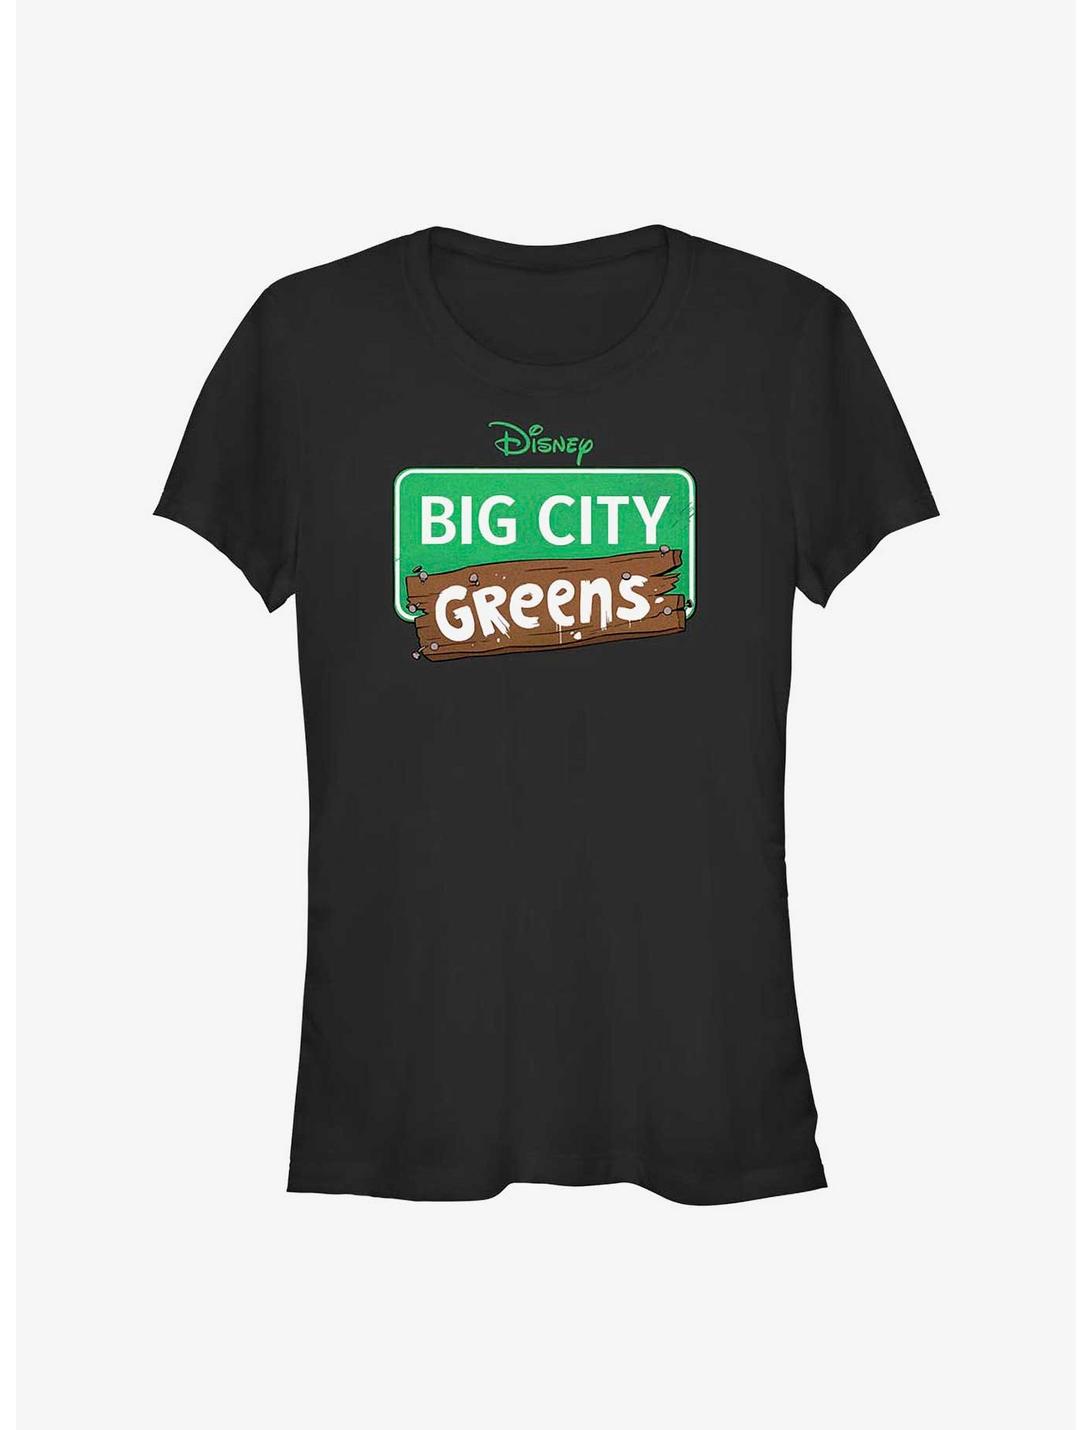 Disney's Big City Greens Logo Girls T-Shirt, BLACK, hi-res